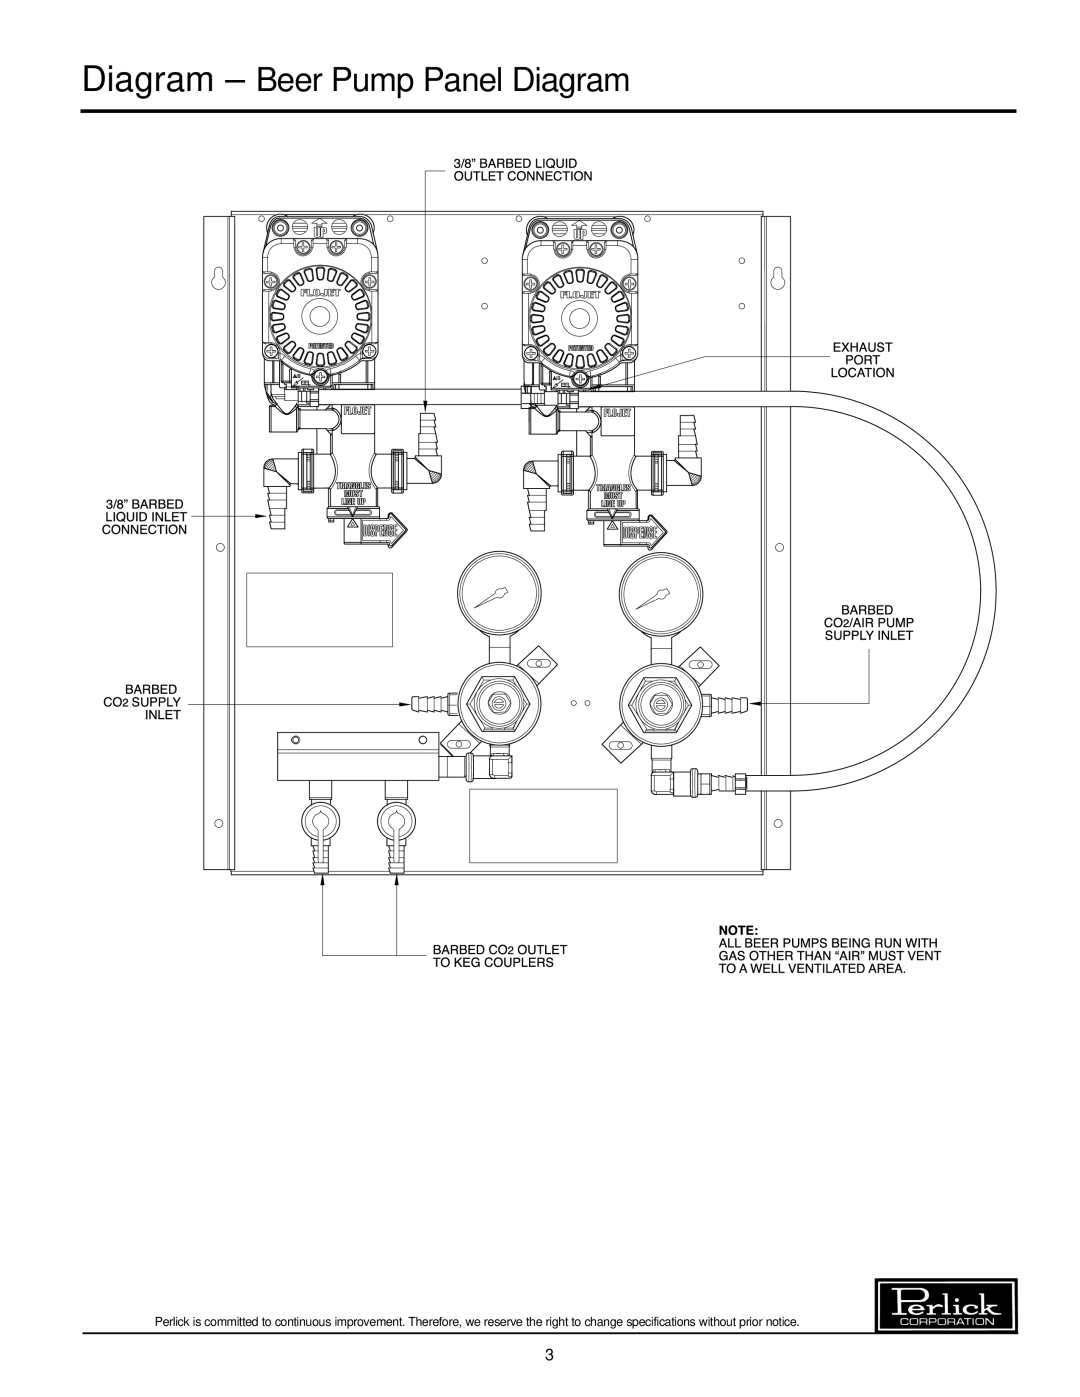 Perlick 63134-4, 63134-3, 63134-2, 63134-1 manual Diagram - Beer Pump Panel Diagram 